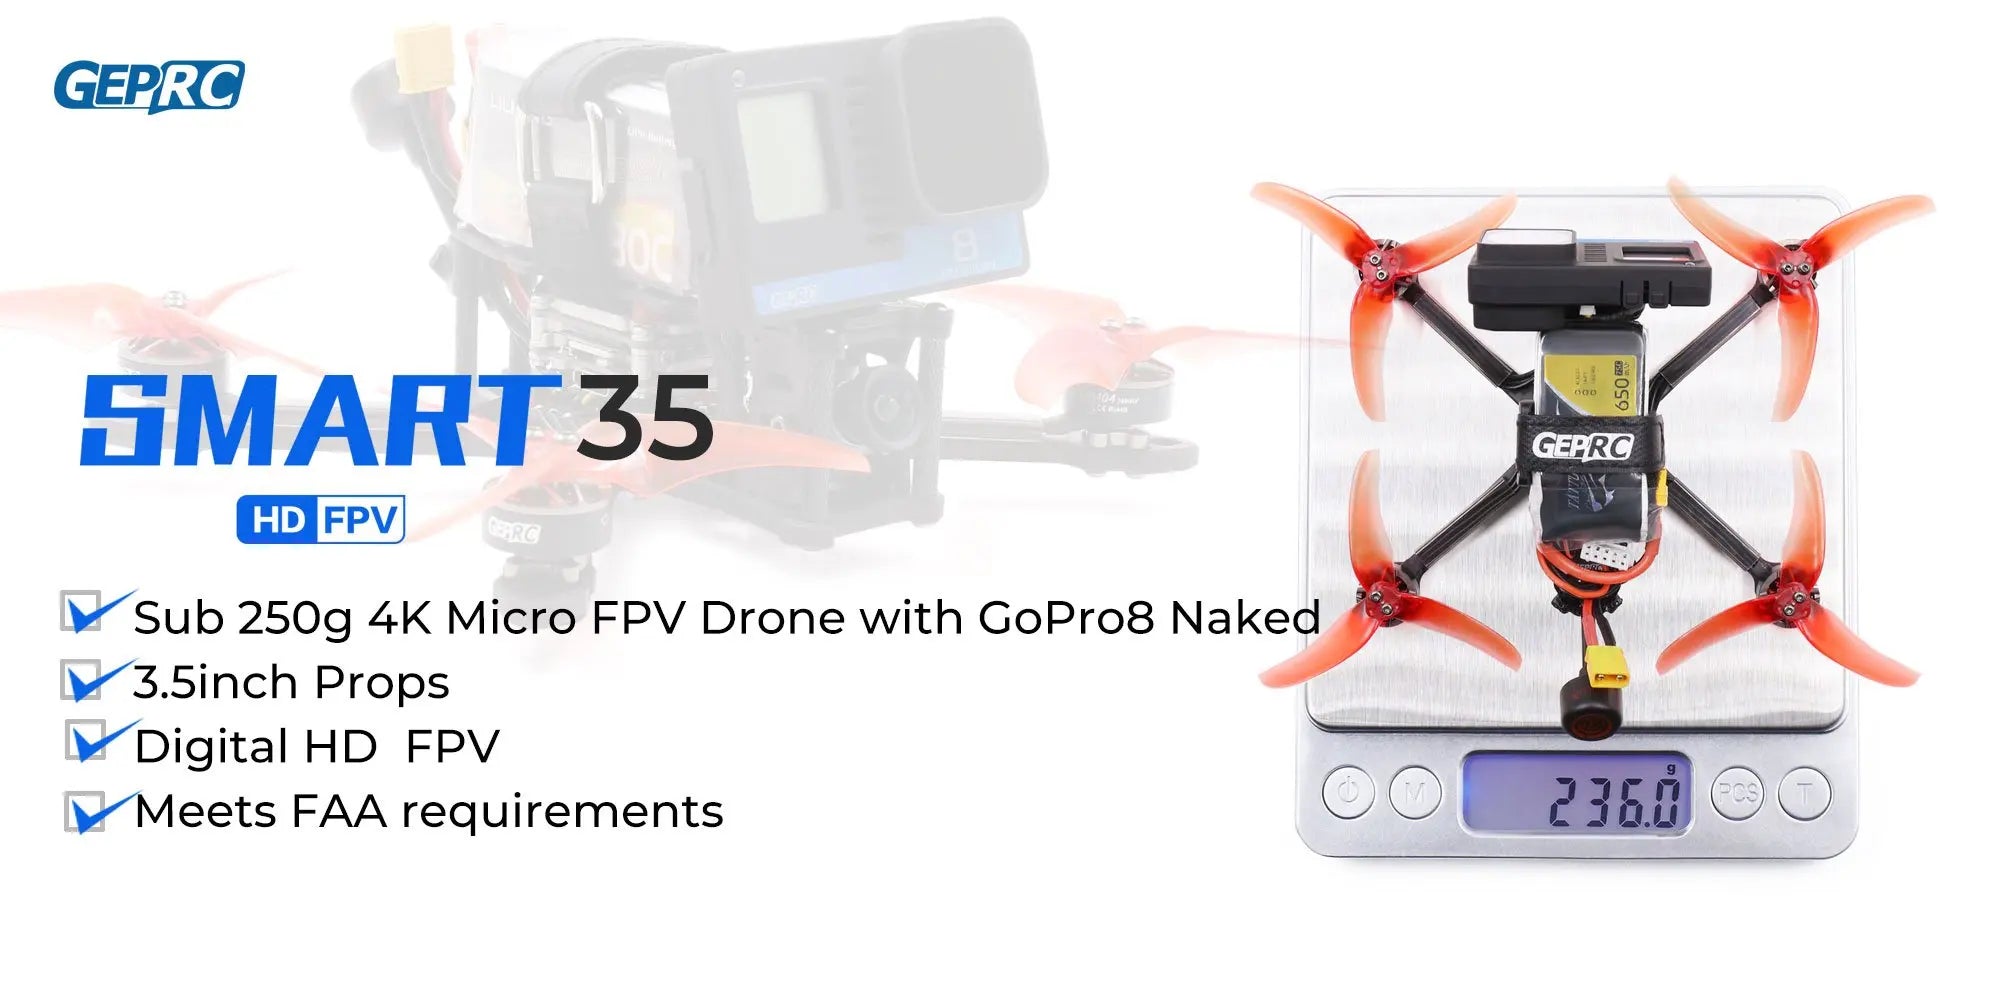 GEPRC SMART 35 FPV Drone, GEPRC SMART 35 FP